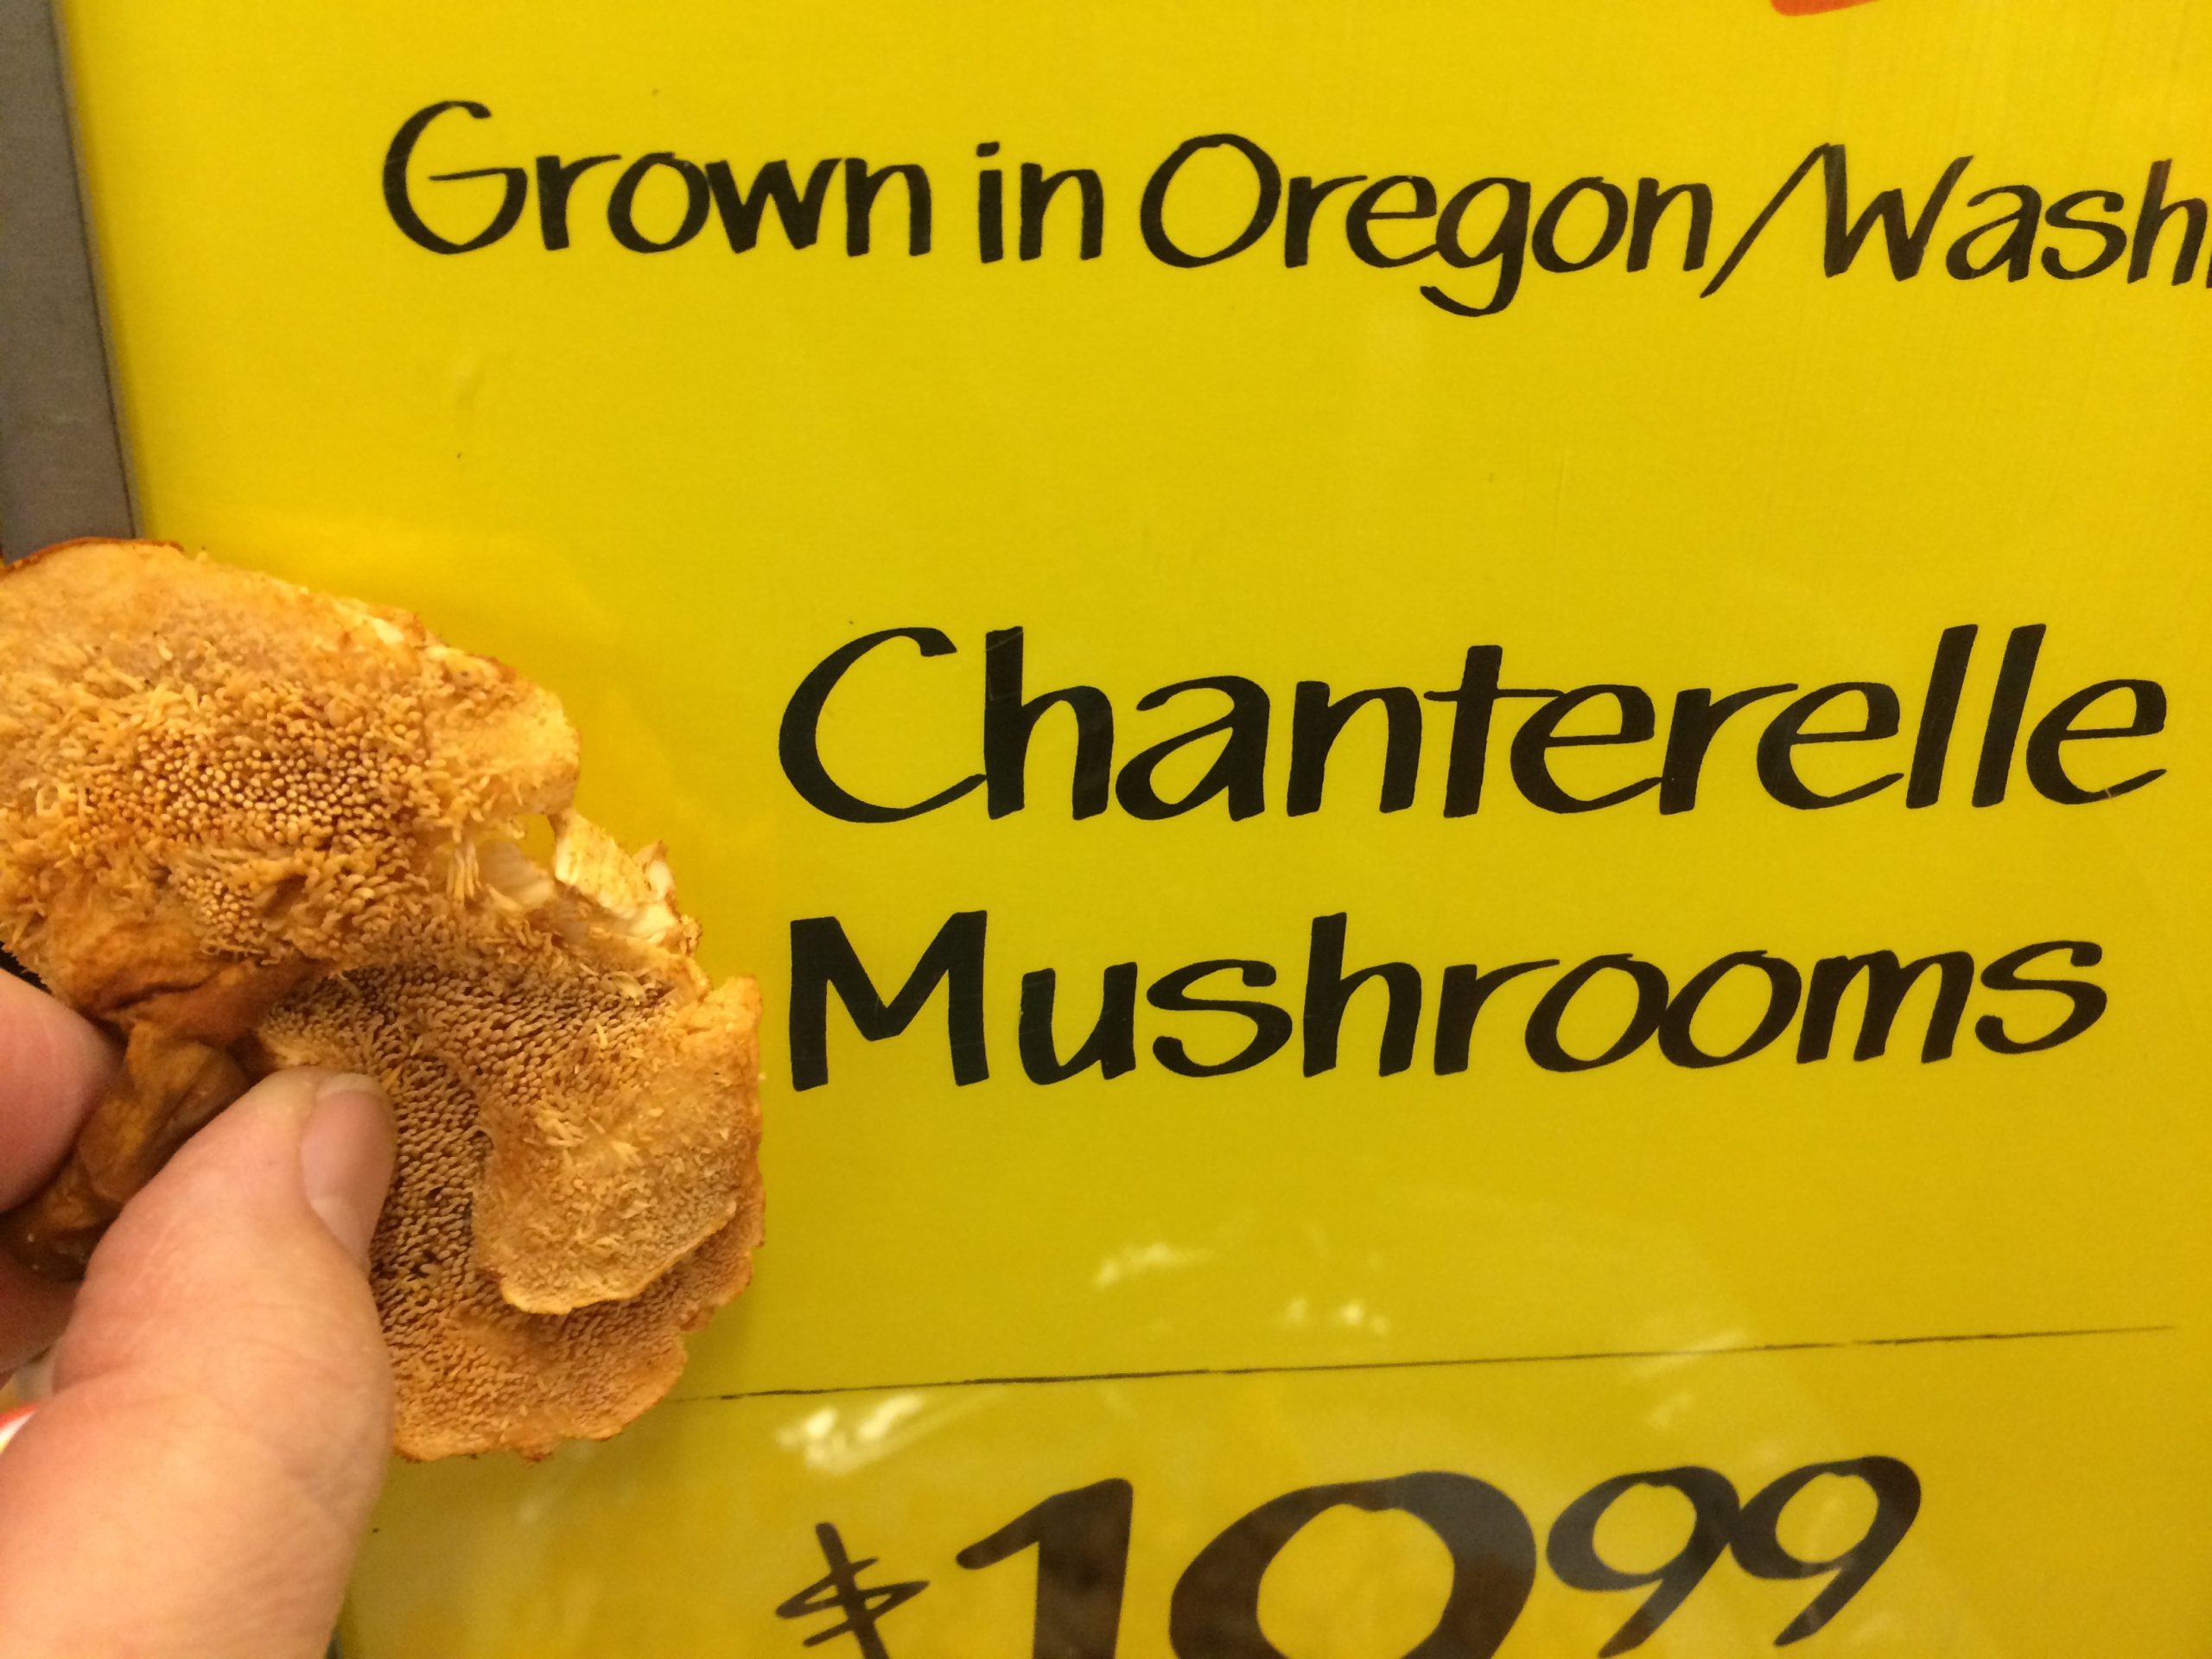 Whole Foods Makes Multiple Mushroom Mistakes!